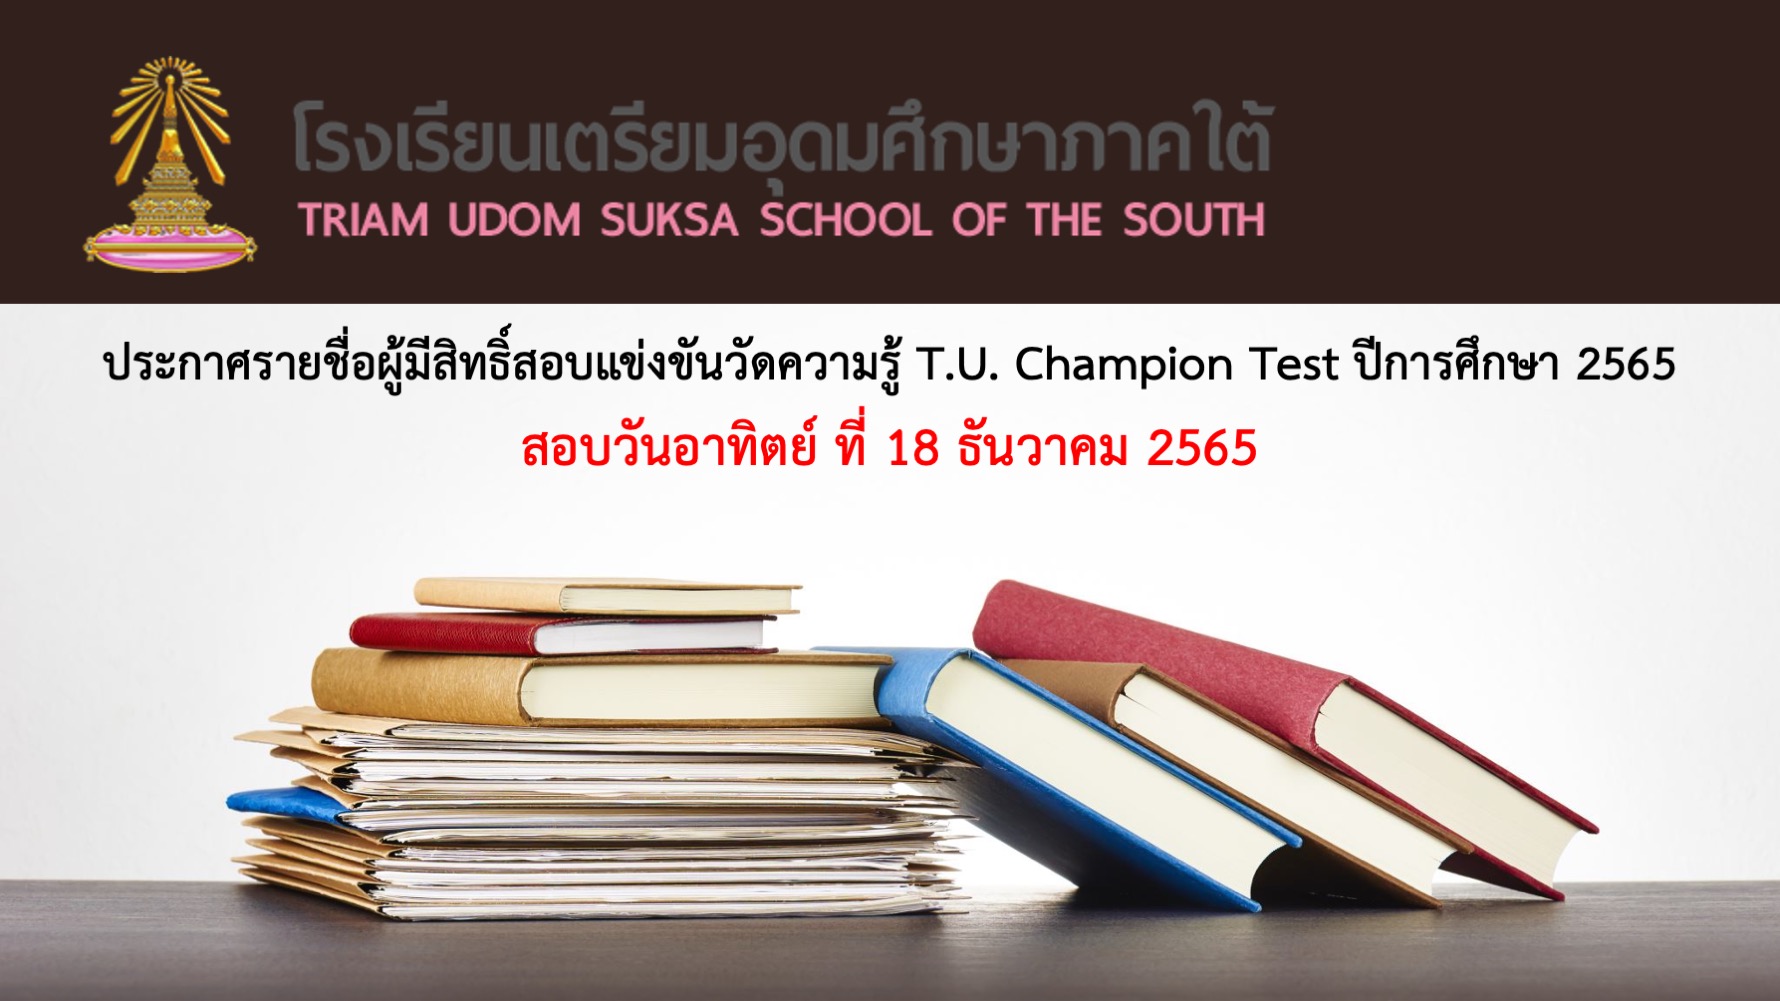 ประกาศรายชื่อผู้มีสิทธิ์สอบแข่งขันวัดความรู้ T.U. Champion Test ครั้งที่ 19 ปี 2565